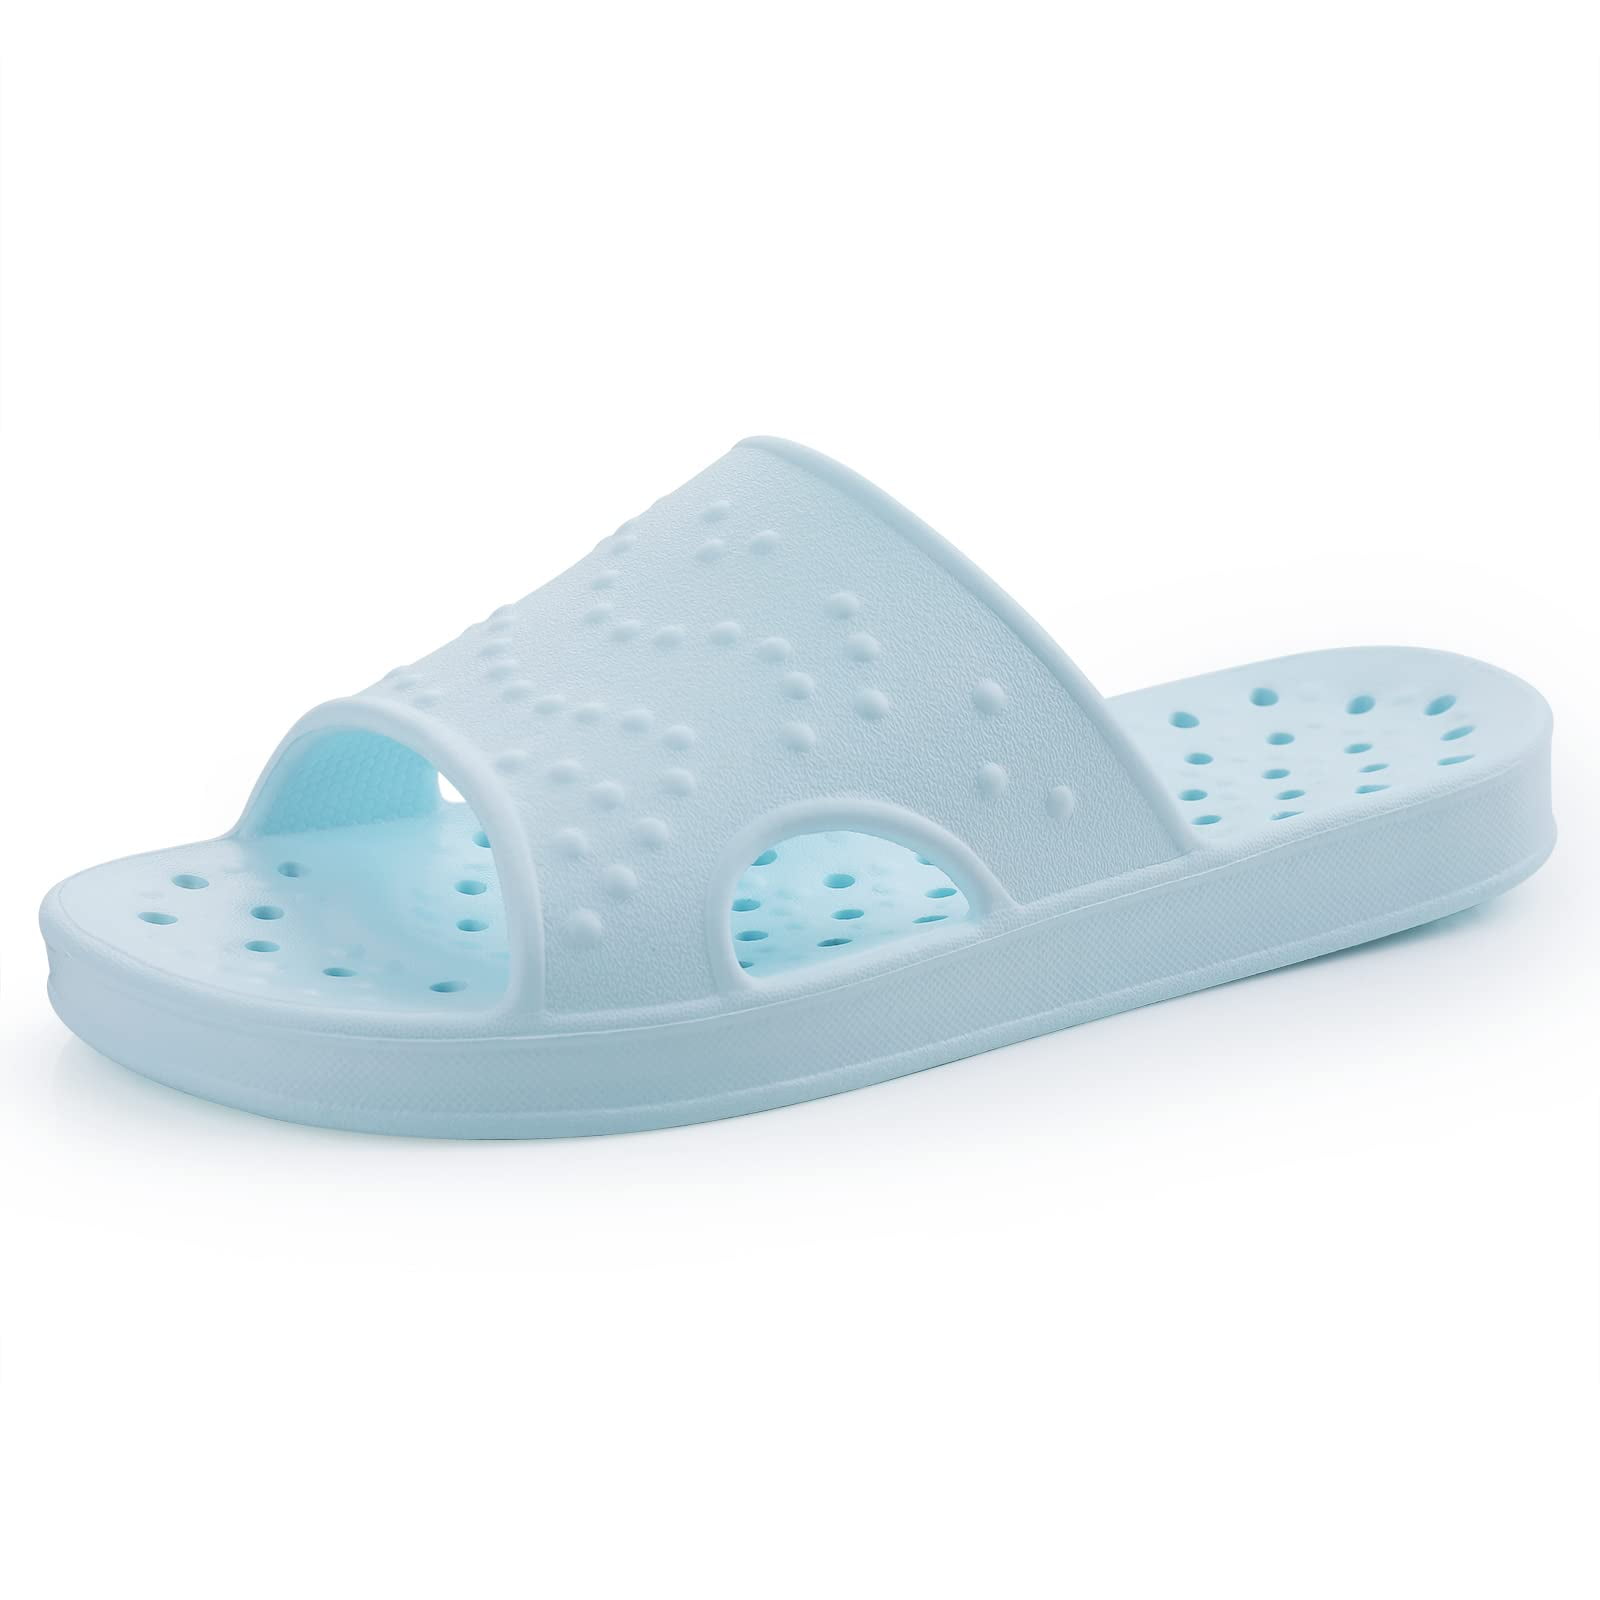 Litfun Shower Shoes for Women Men, Quick Drying Non Slip Bath Slippers ...